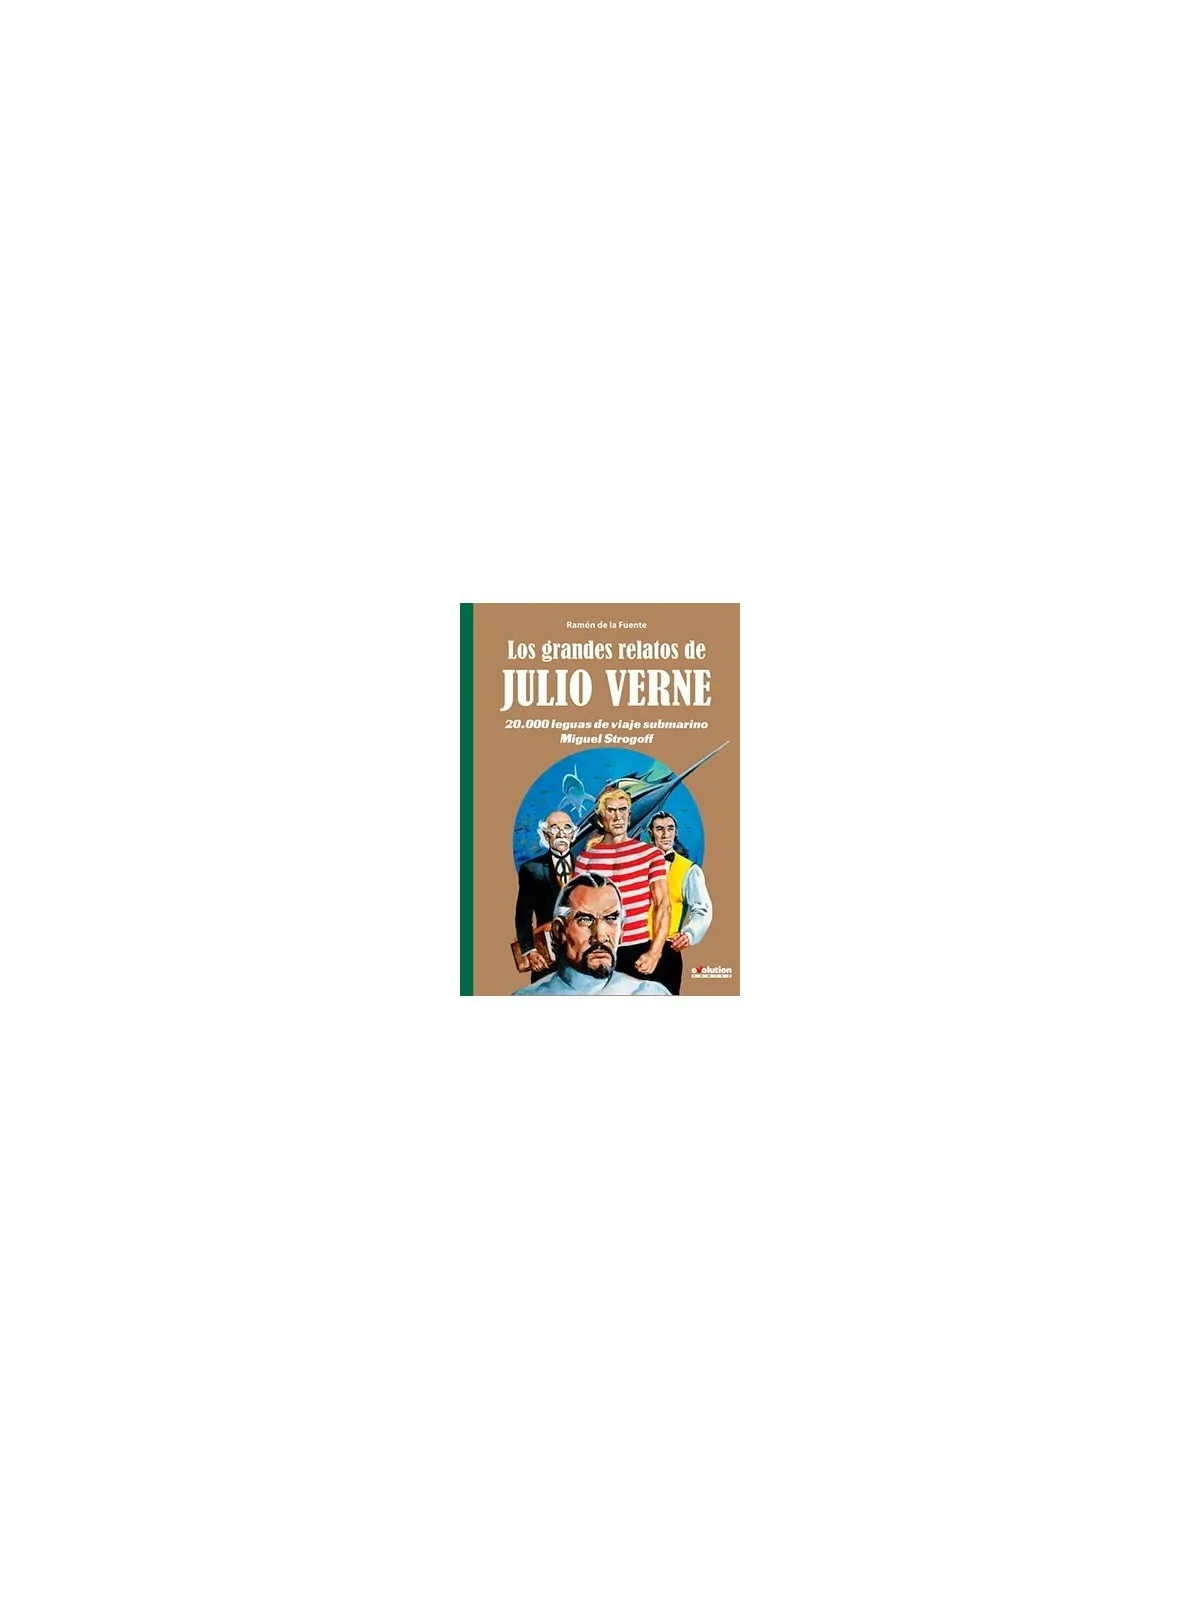 Comprar Los Grandes Relatos de Julio Verne 02 barato al mejor precio 1